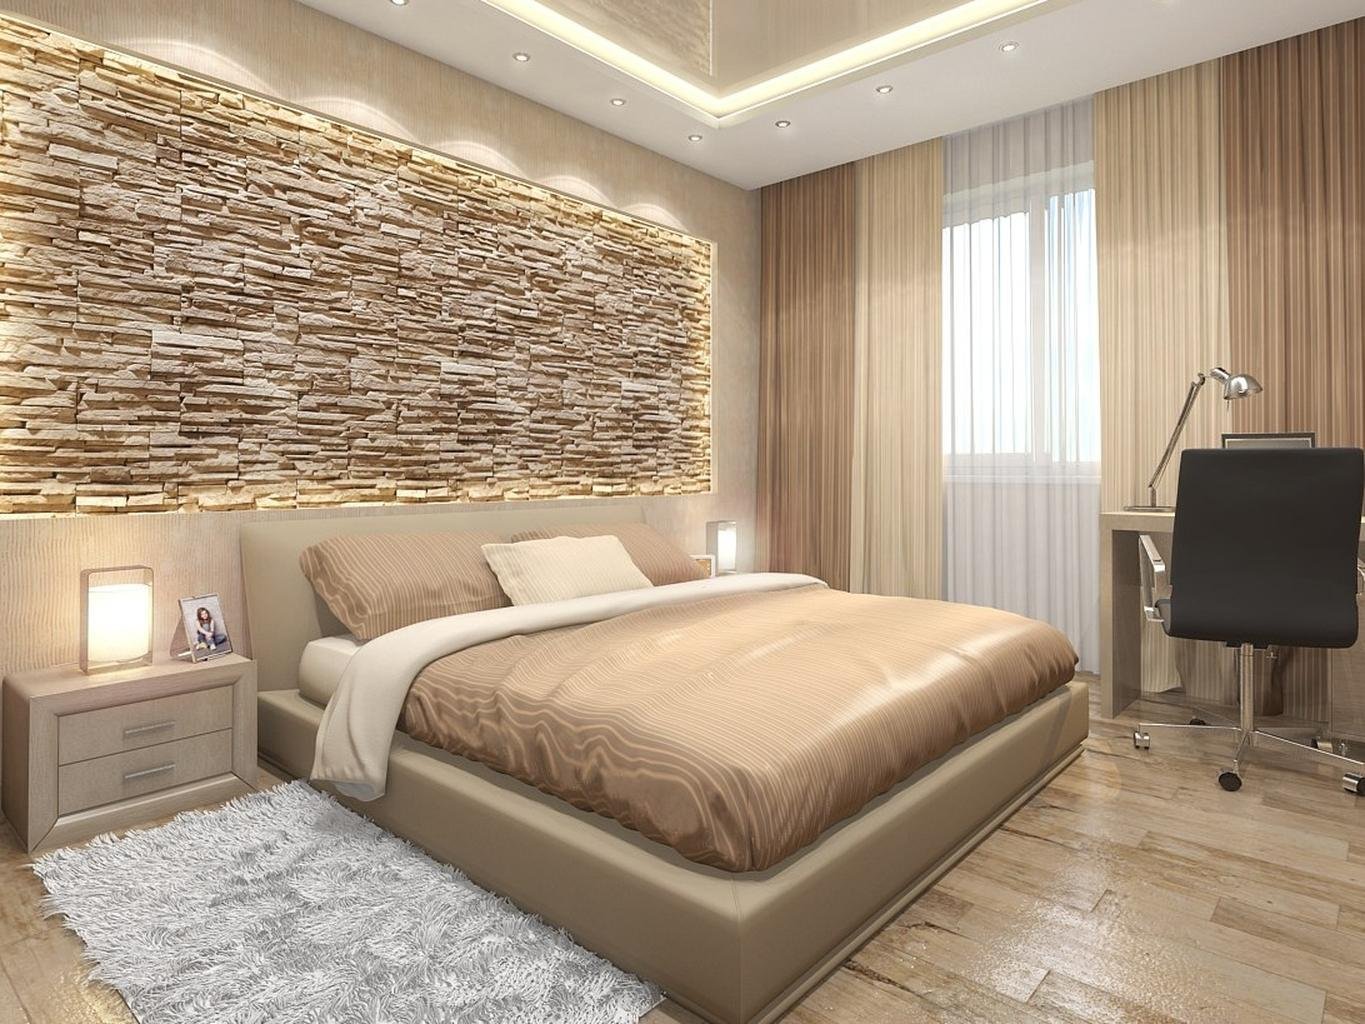 Камень в дизайне спальни